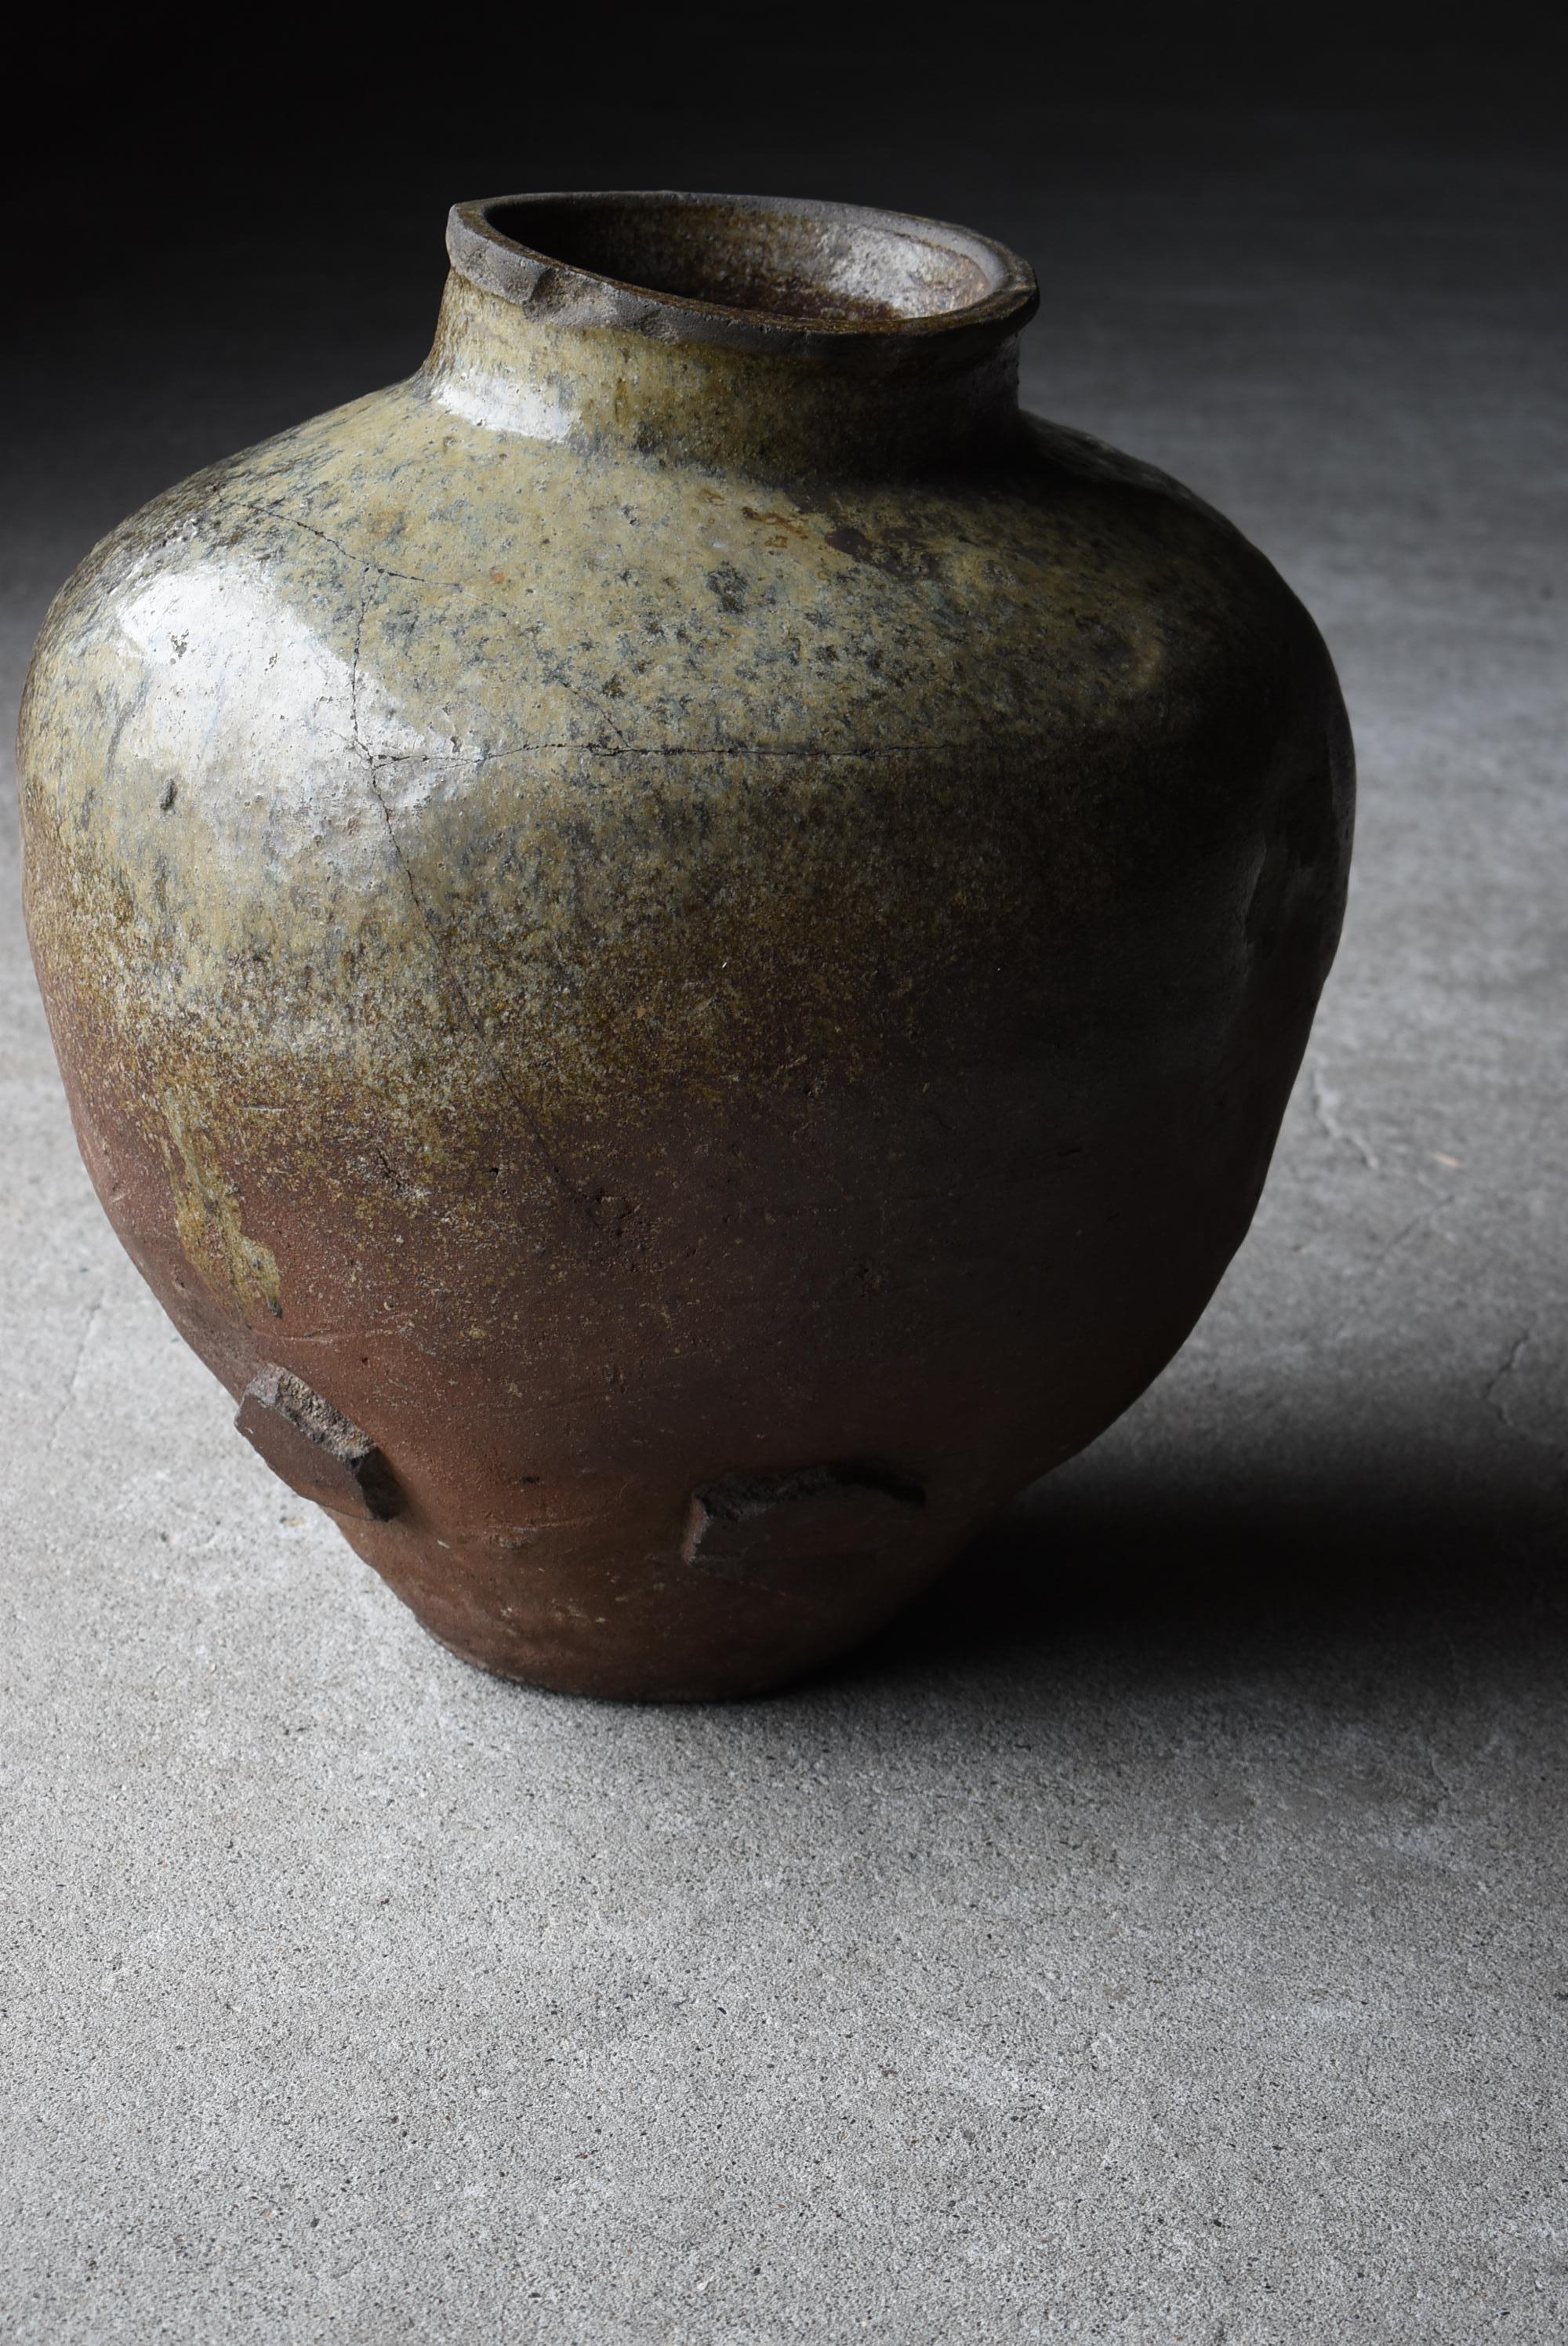 Japanese Old Pottery 1700s-1800s/Antique Flower Vase Vessel Jar Tsubo Wabisabi 1